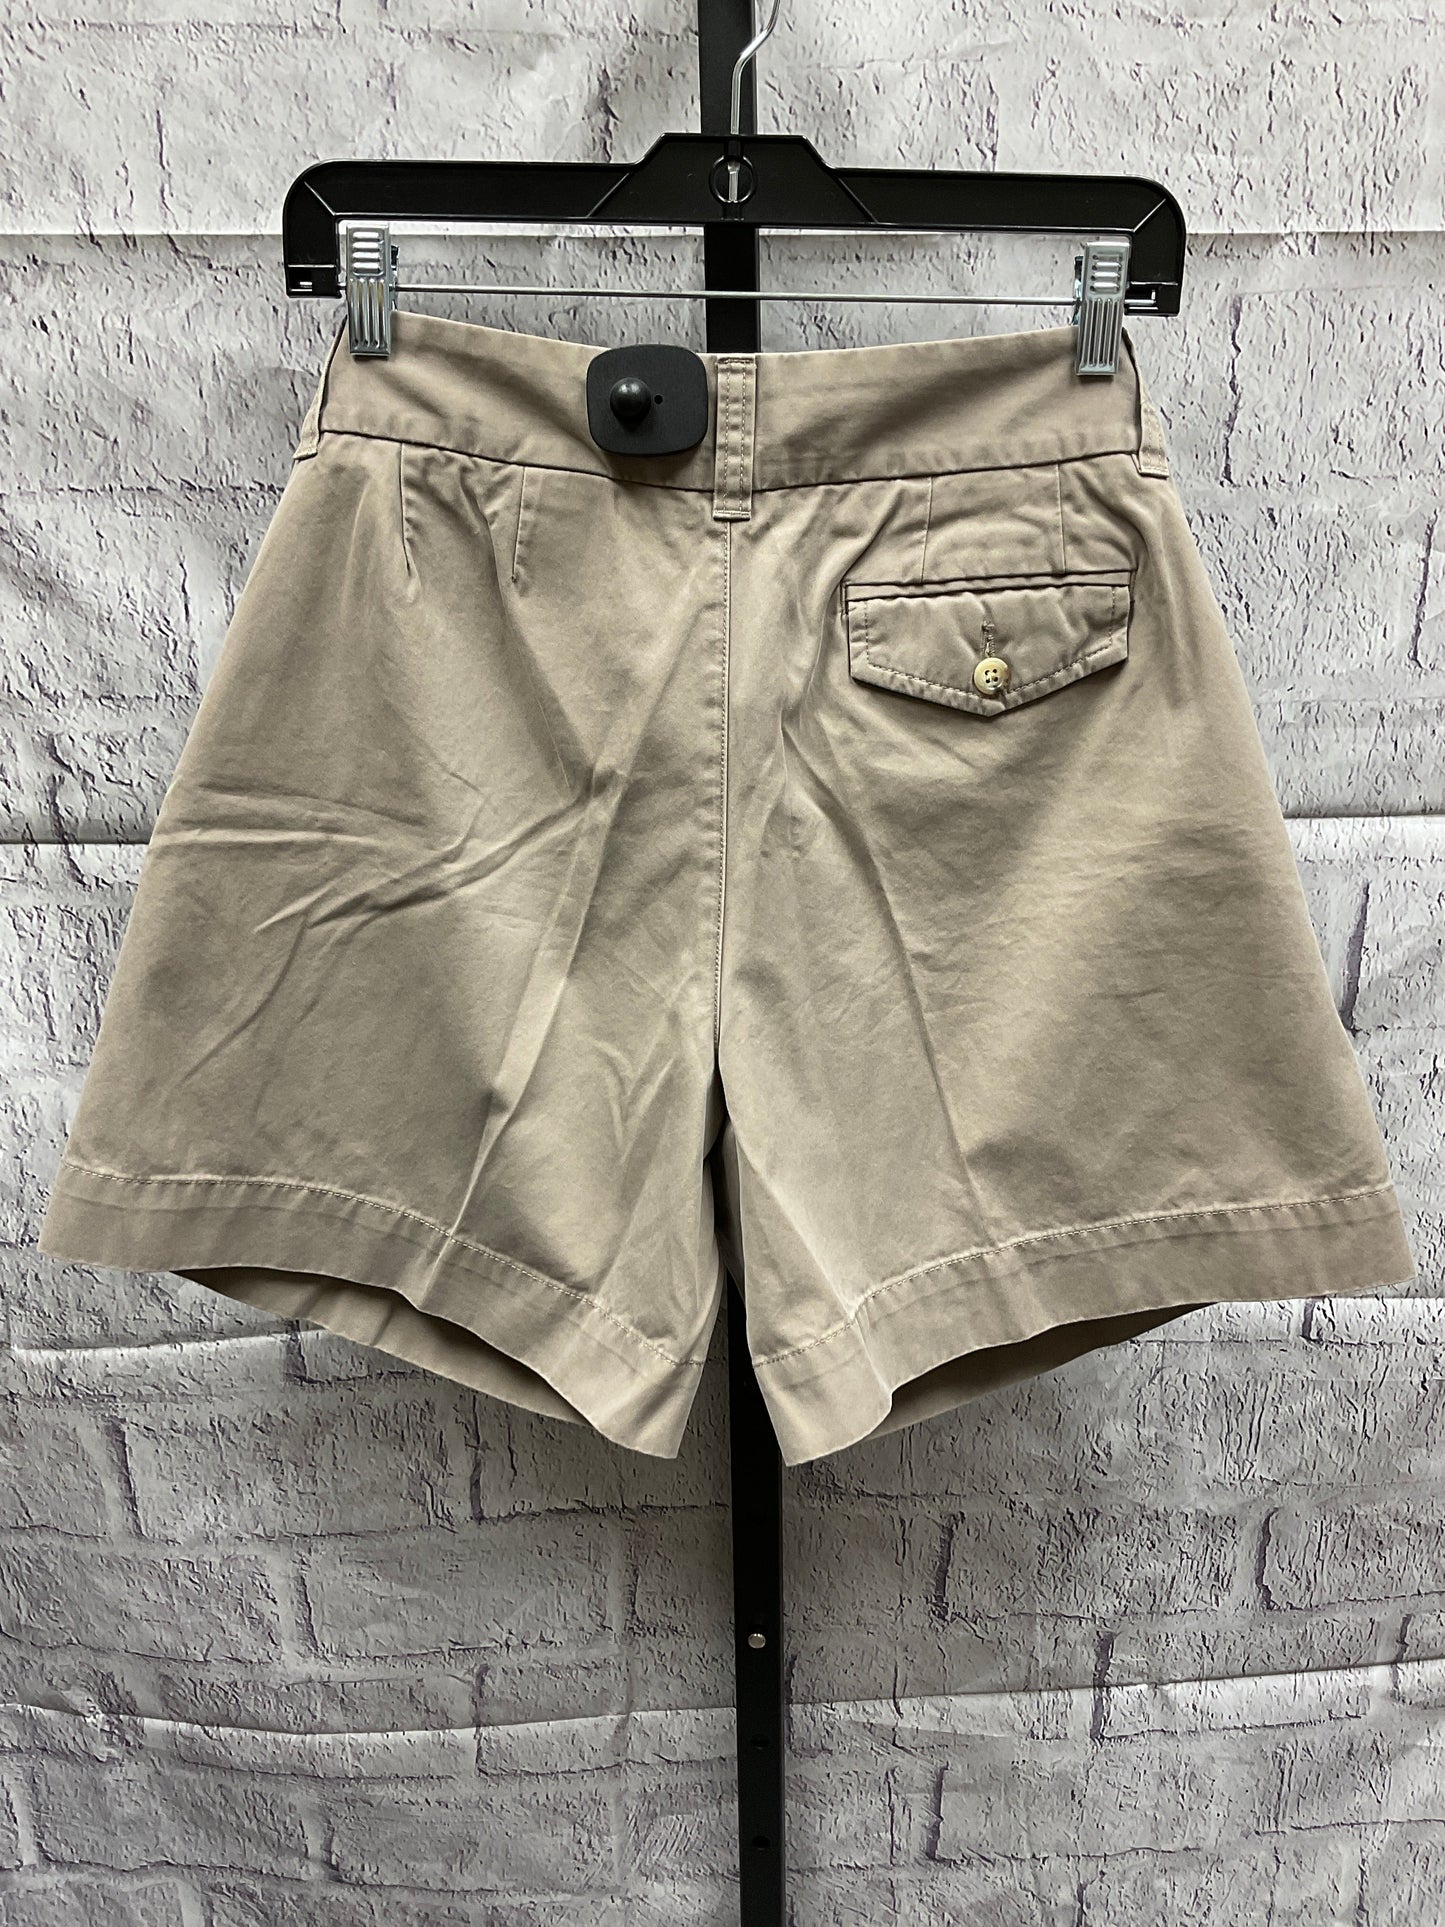 Shorts By Eddie Bauer  Size: 12